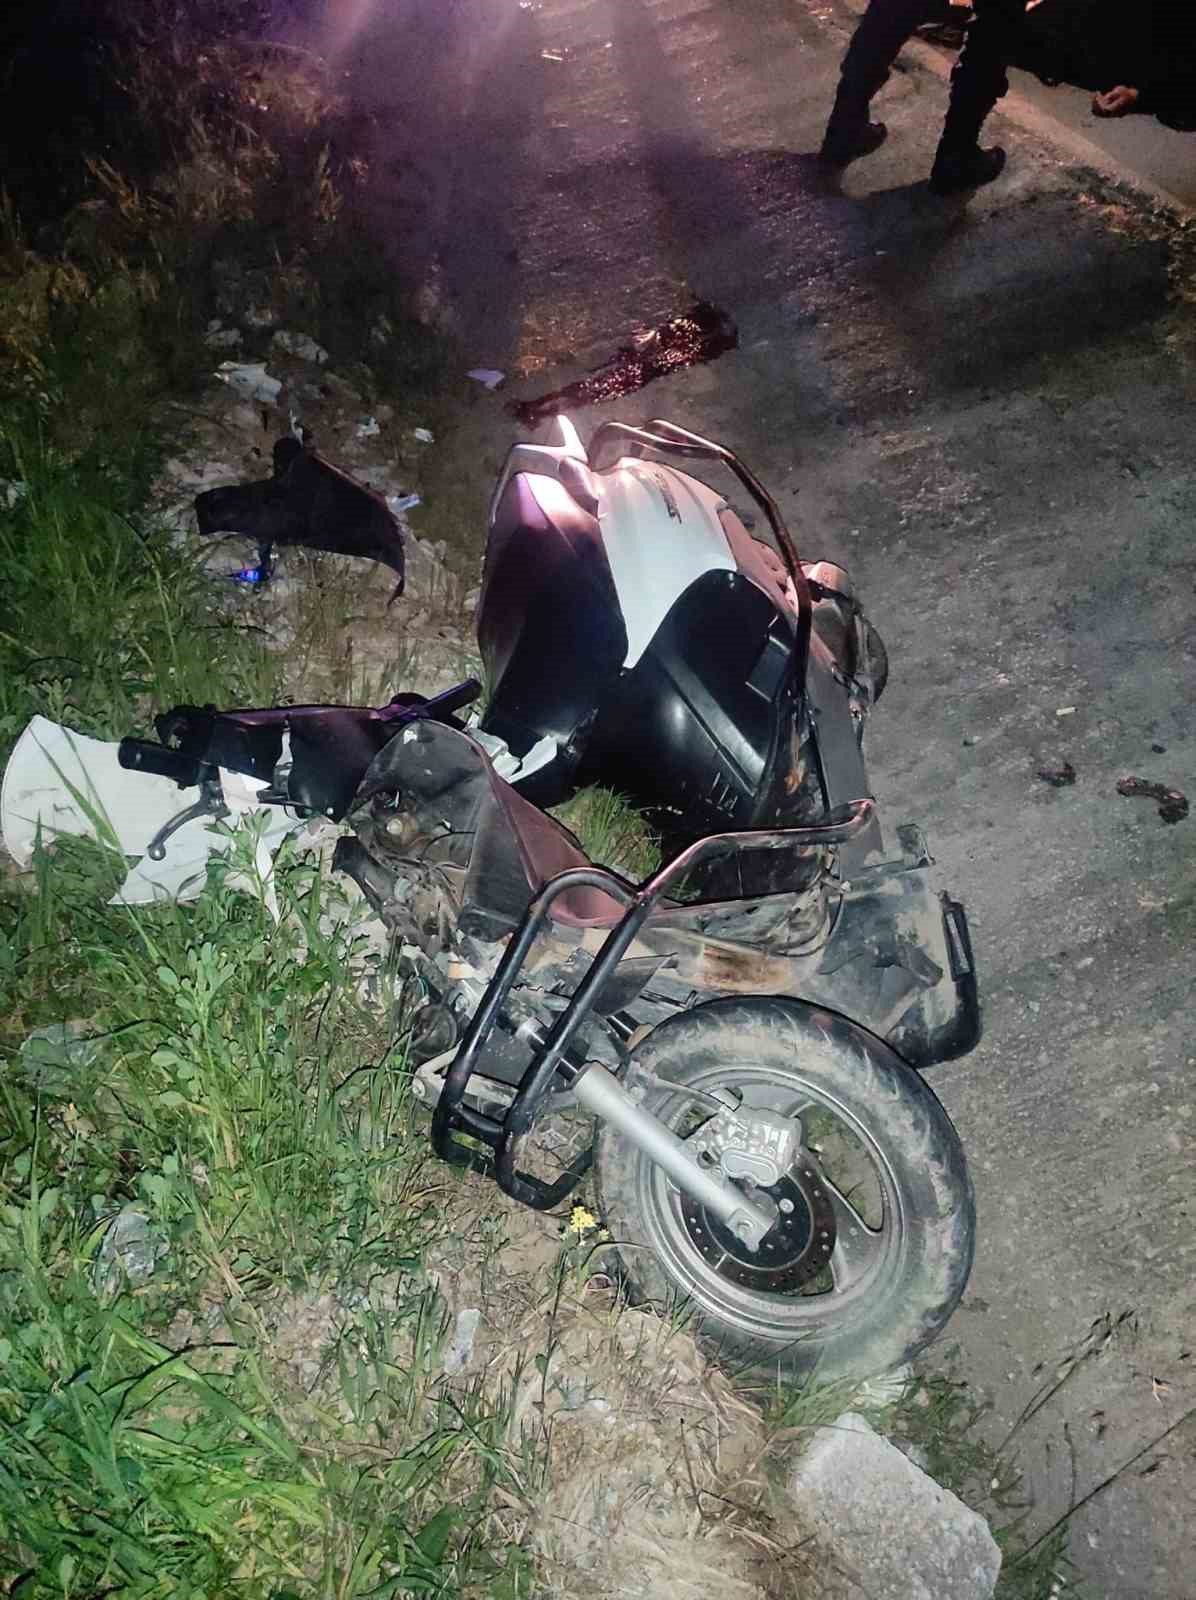 16 yaşındaki motosiklet sürücüsü 37 yaşındaki yayaya çarptı; yaya hayatını kaybetti sürücü ağır yaralı
